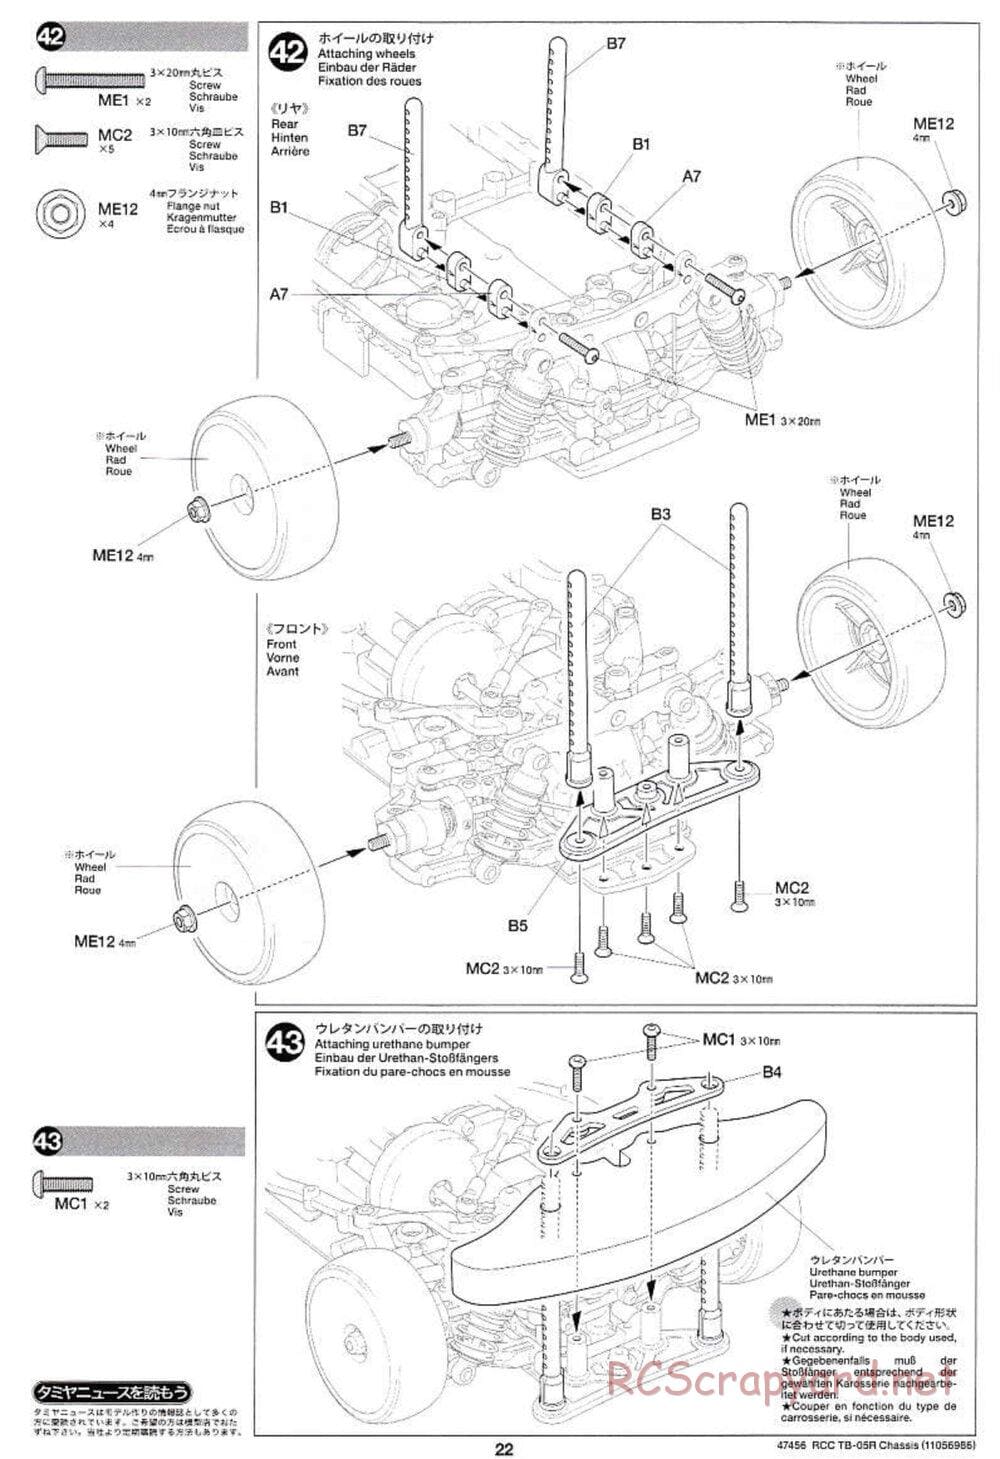 Tamiya - TB-05R Chassis - Manual - Page 22